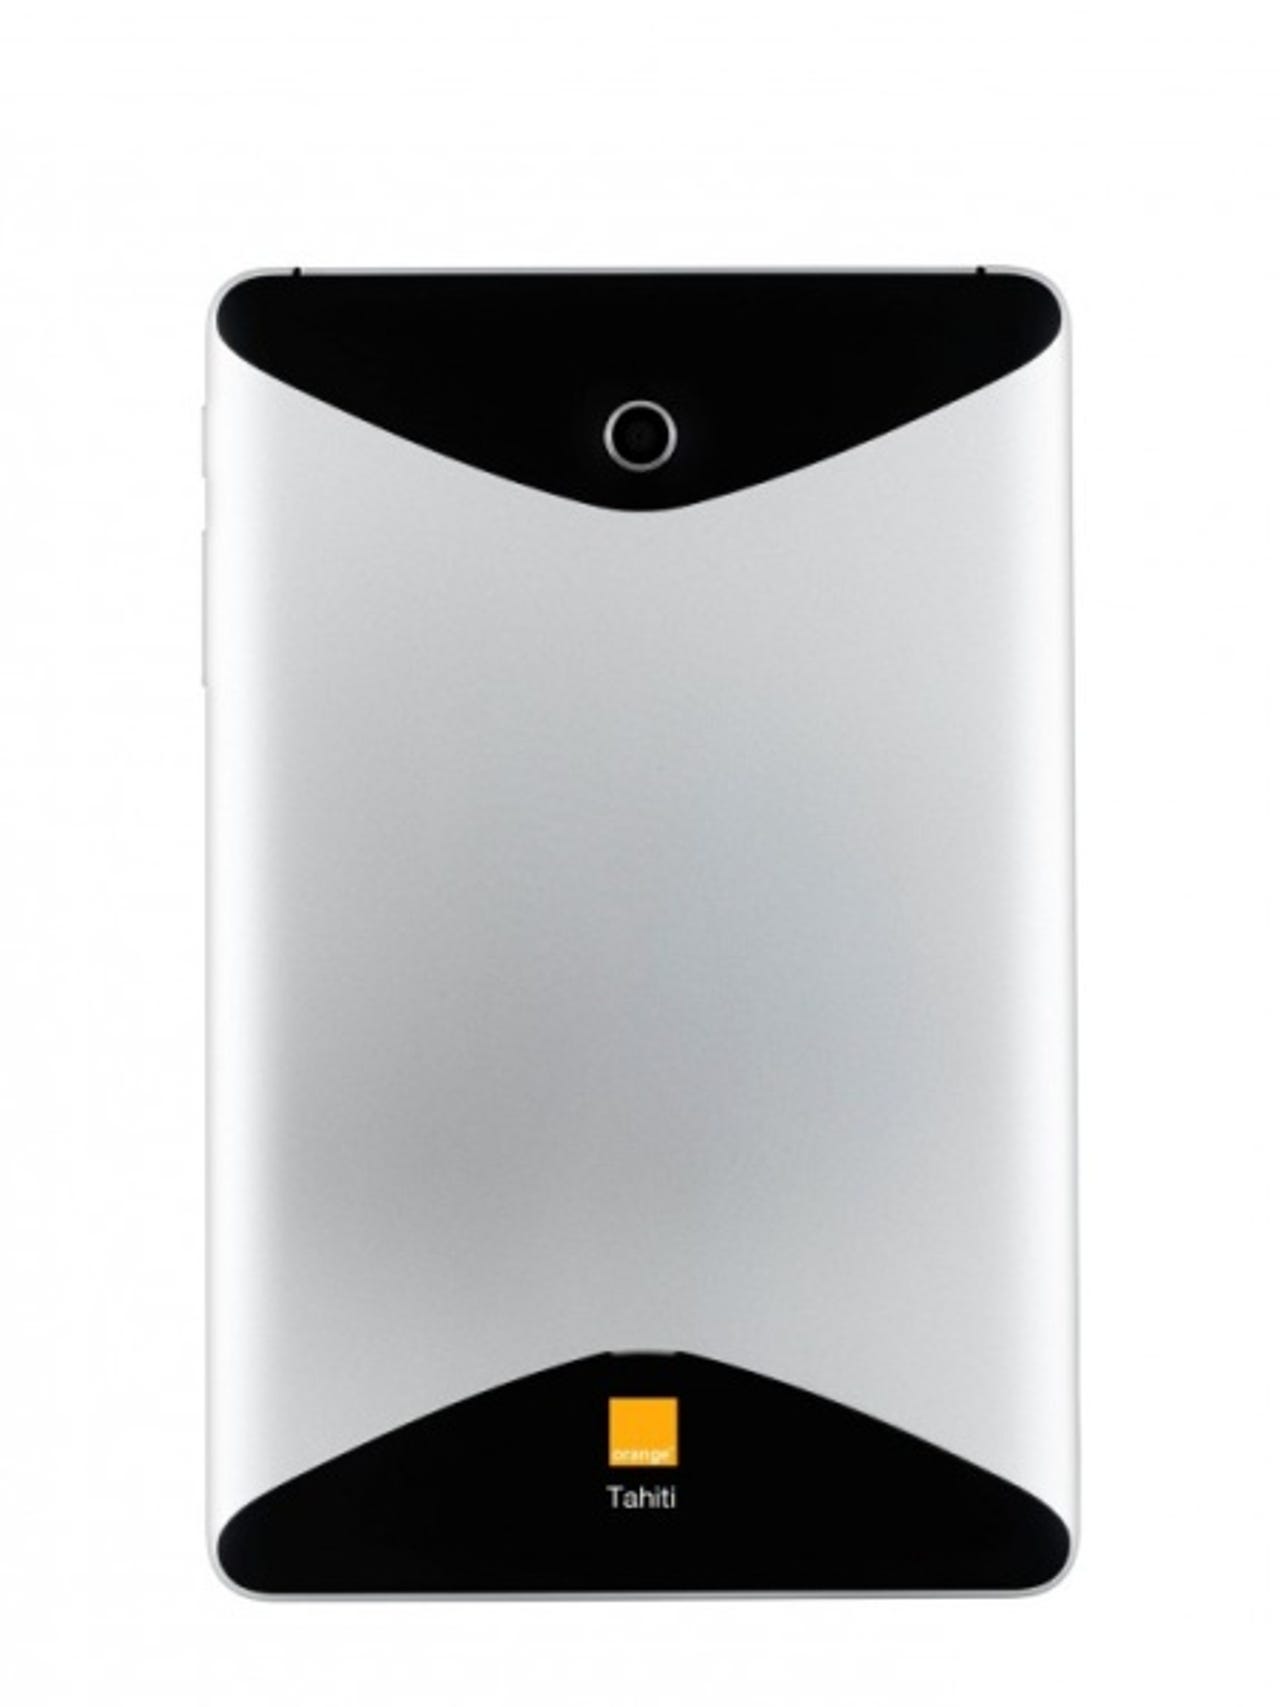 tahiti-tablet-orange-2.jpg